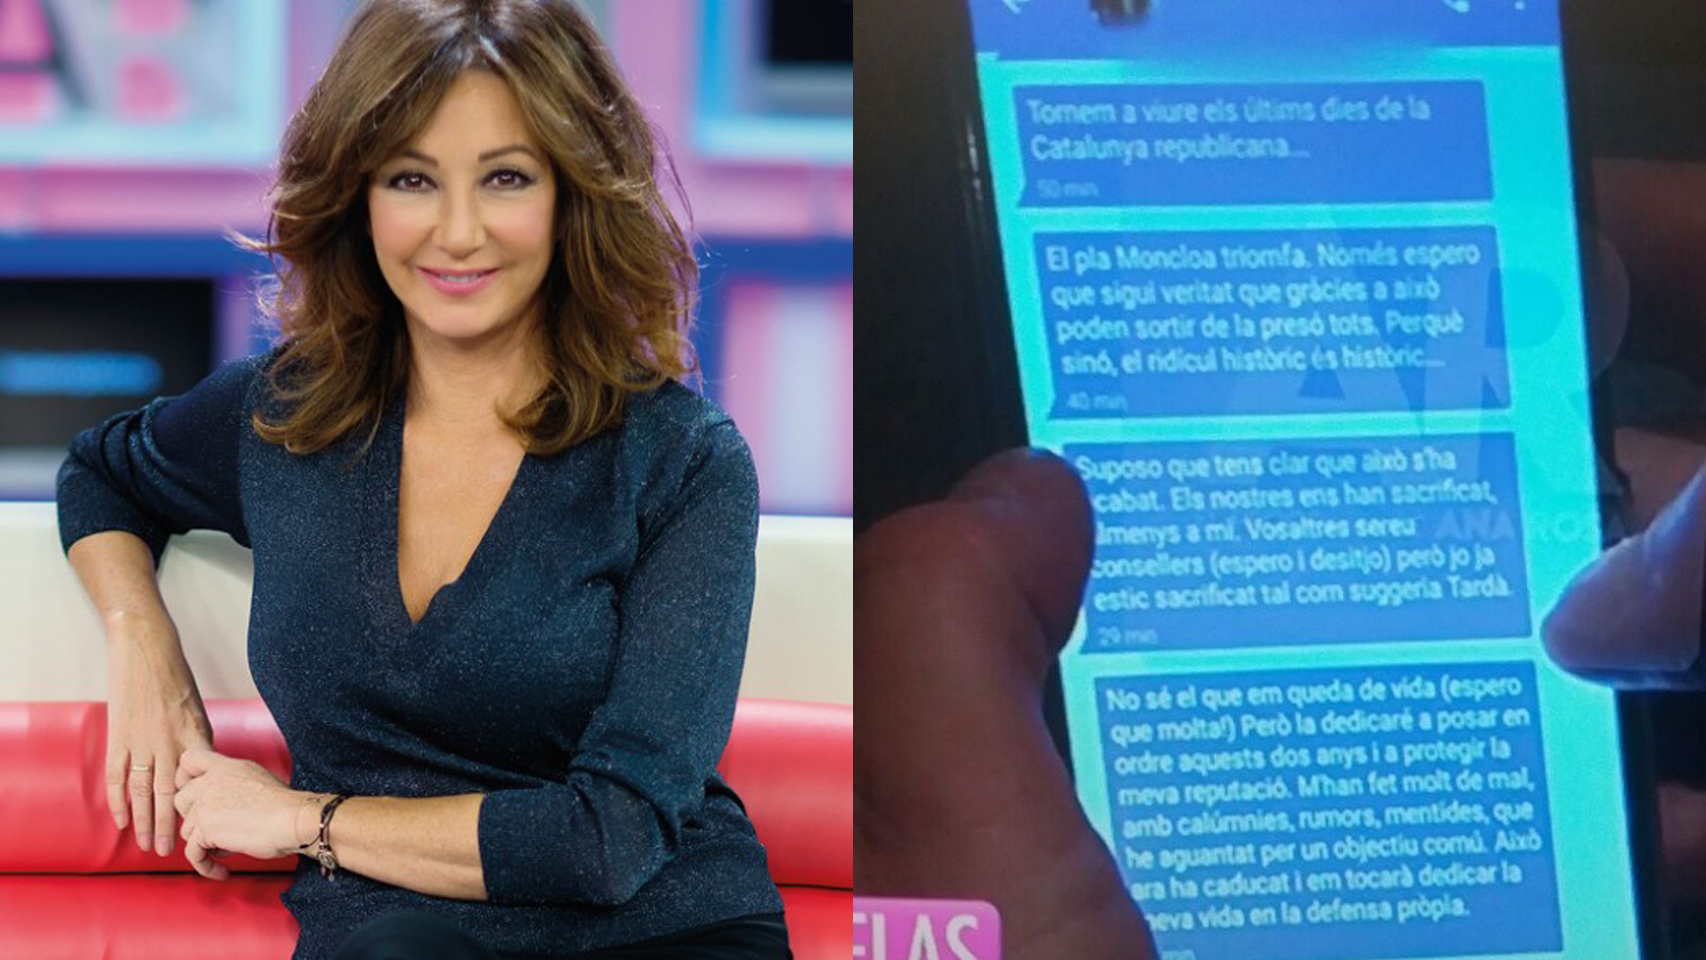 La presentadora Ana Rosa Quintana y el mensaje difundido por su programa.